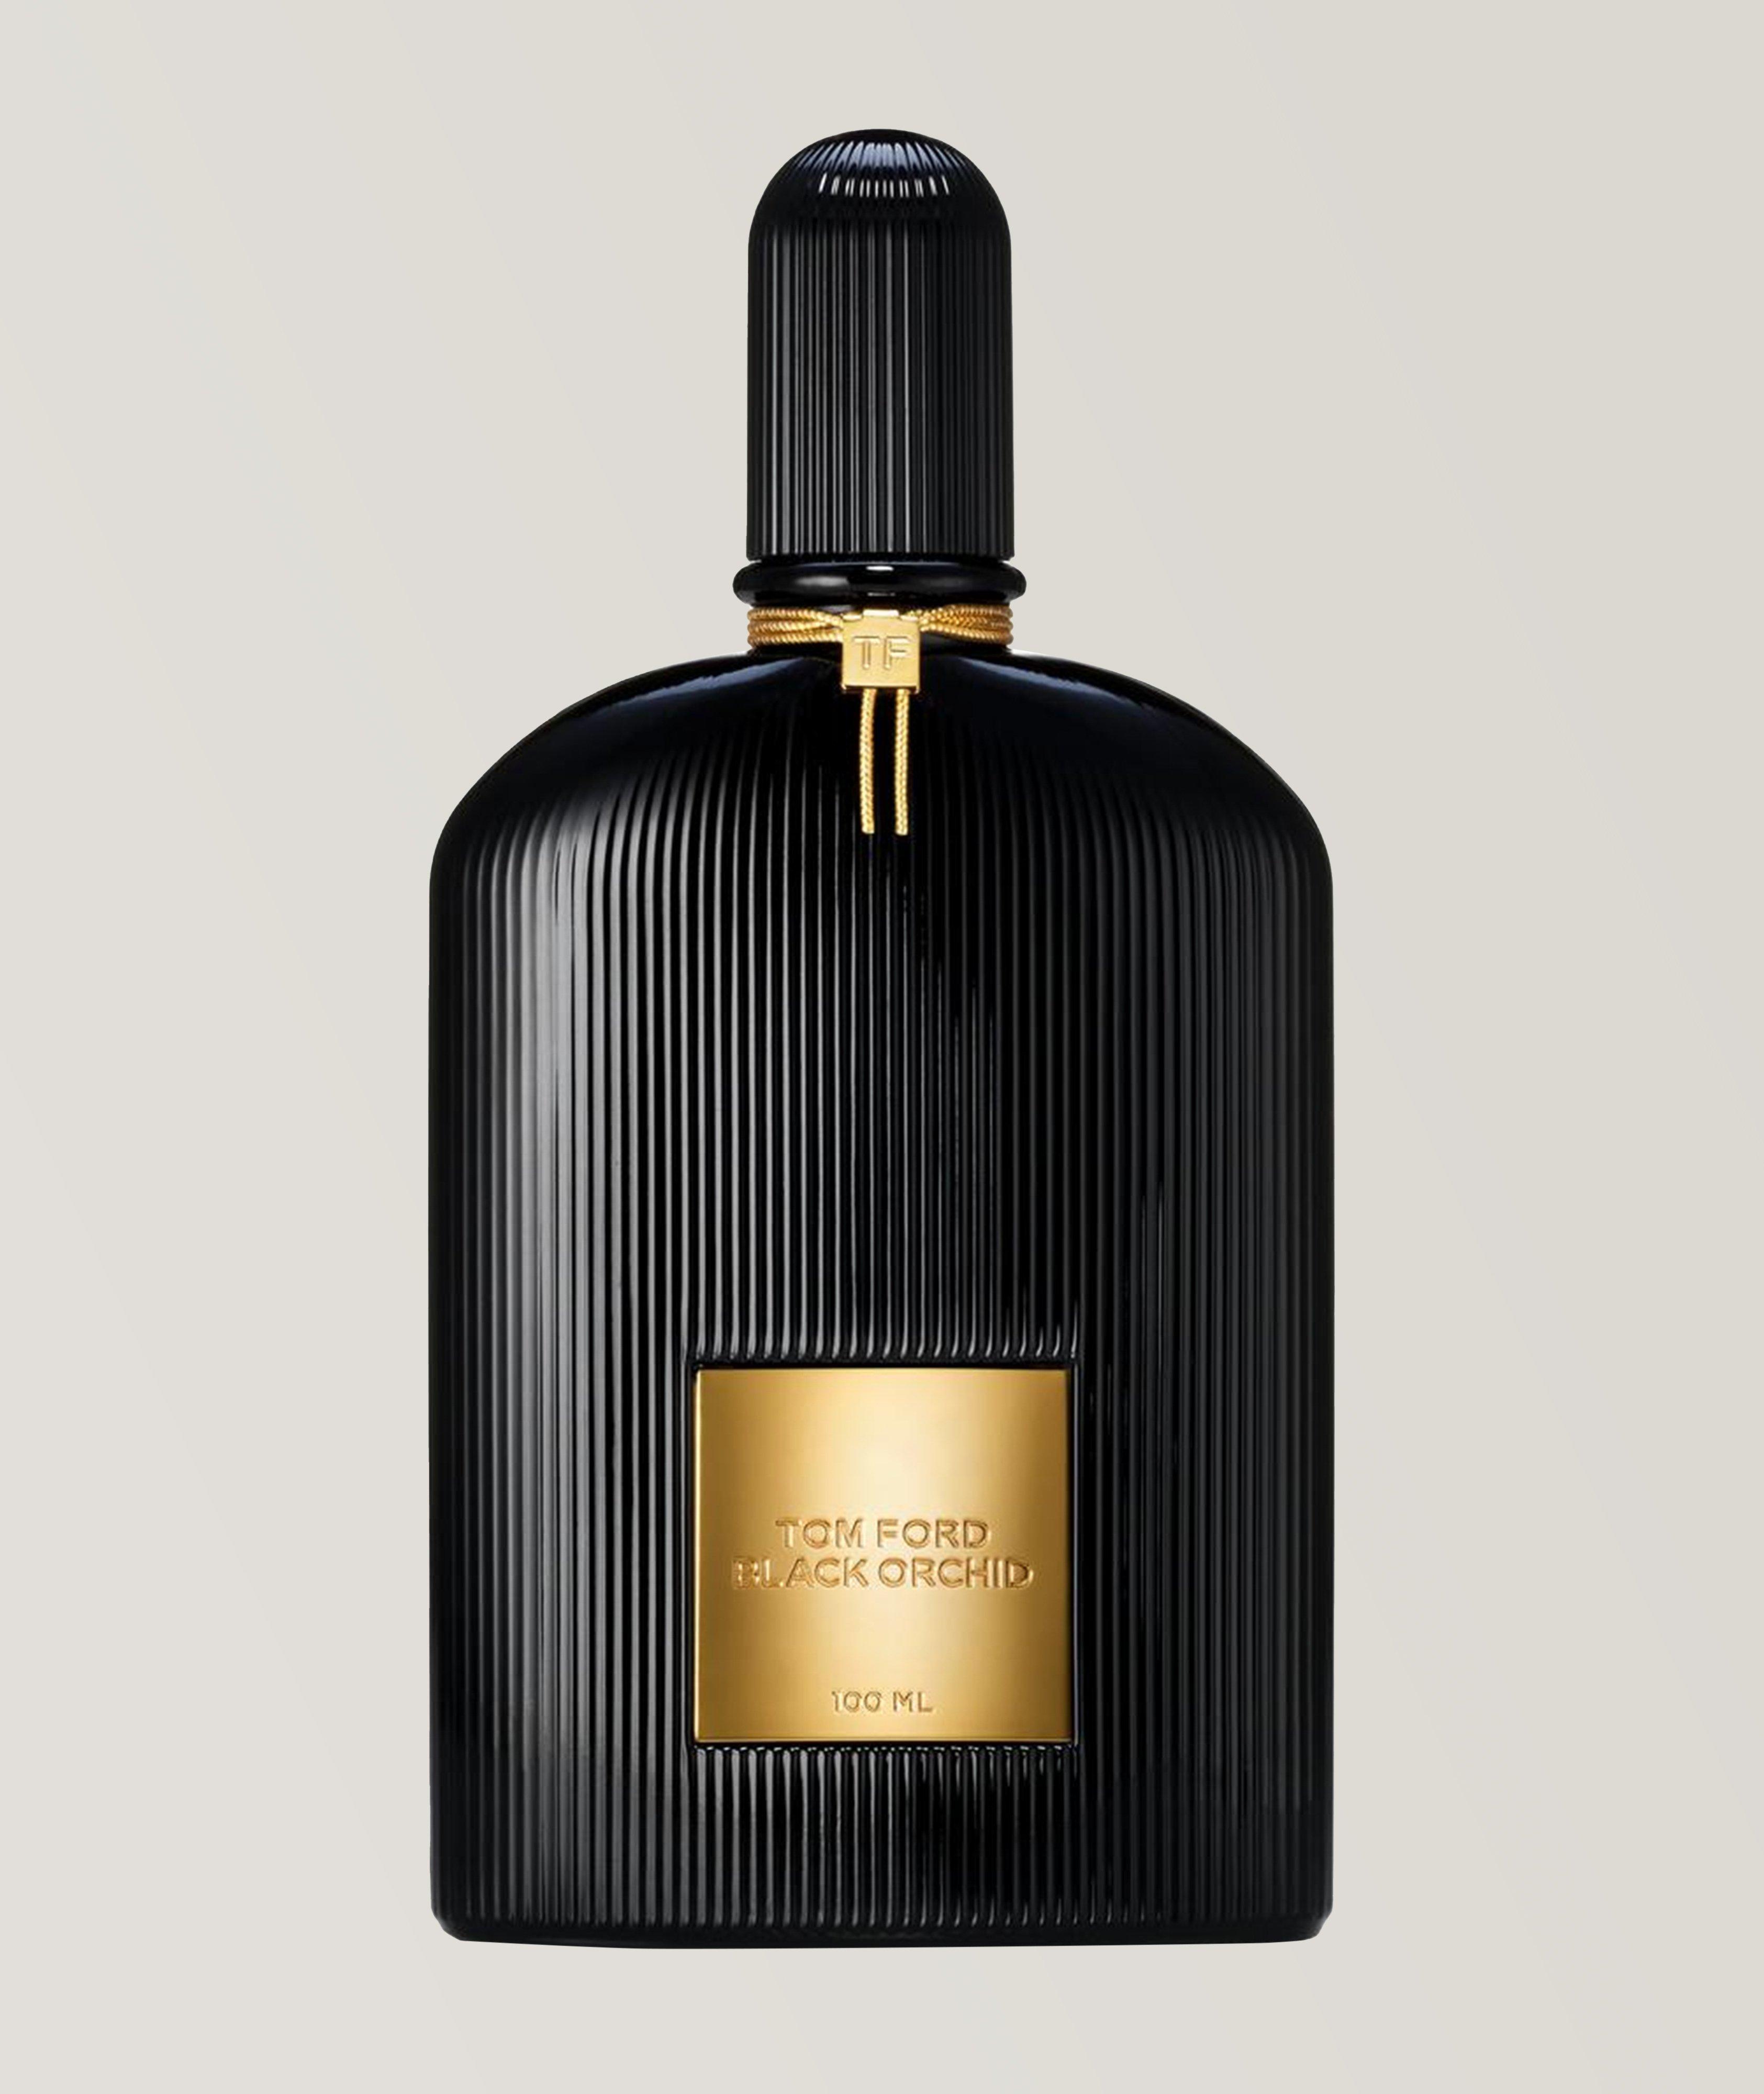 TOM FORD Eau de parfum Black Orchid (100 ml)